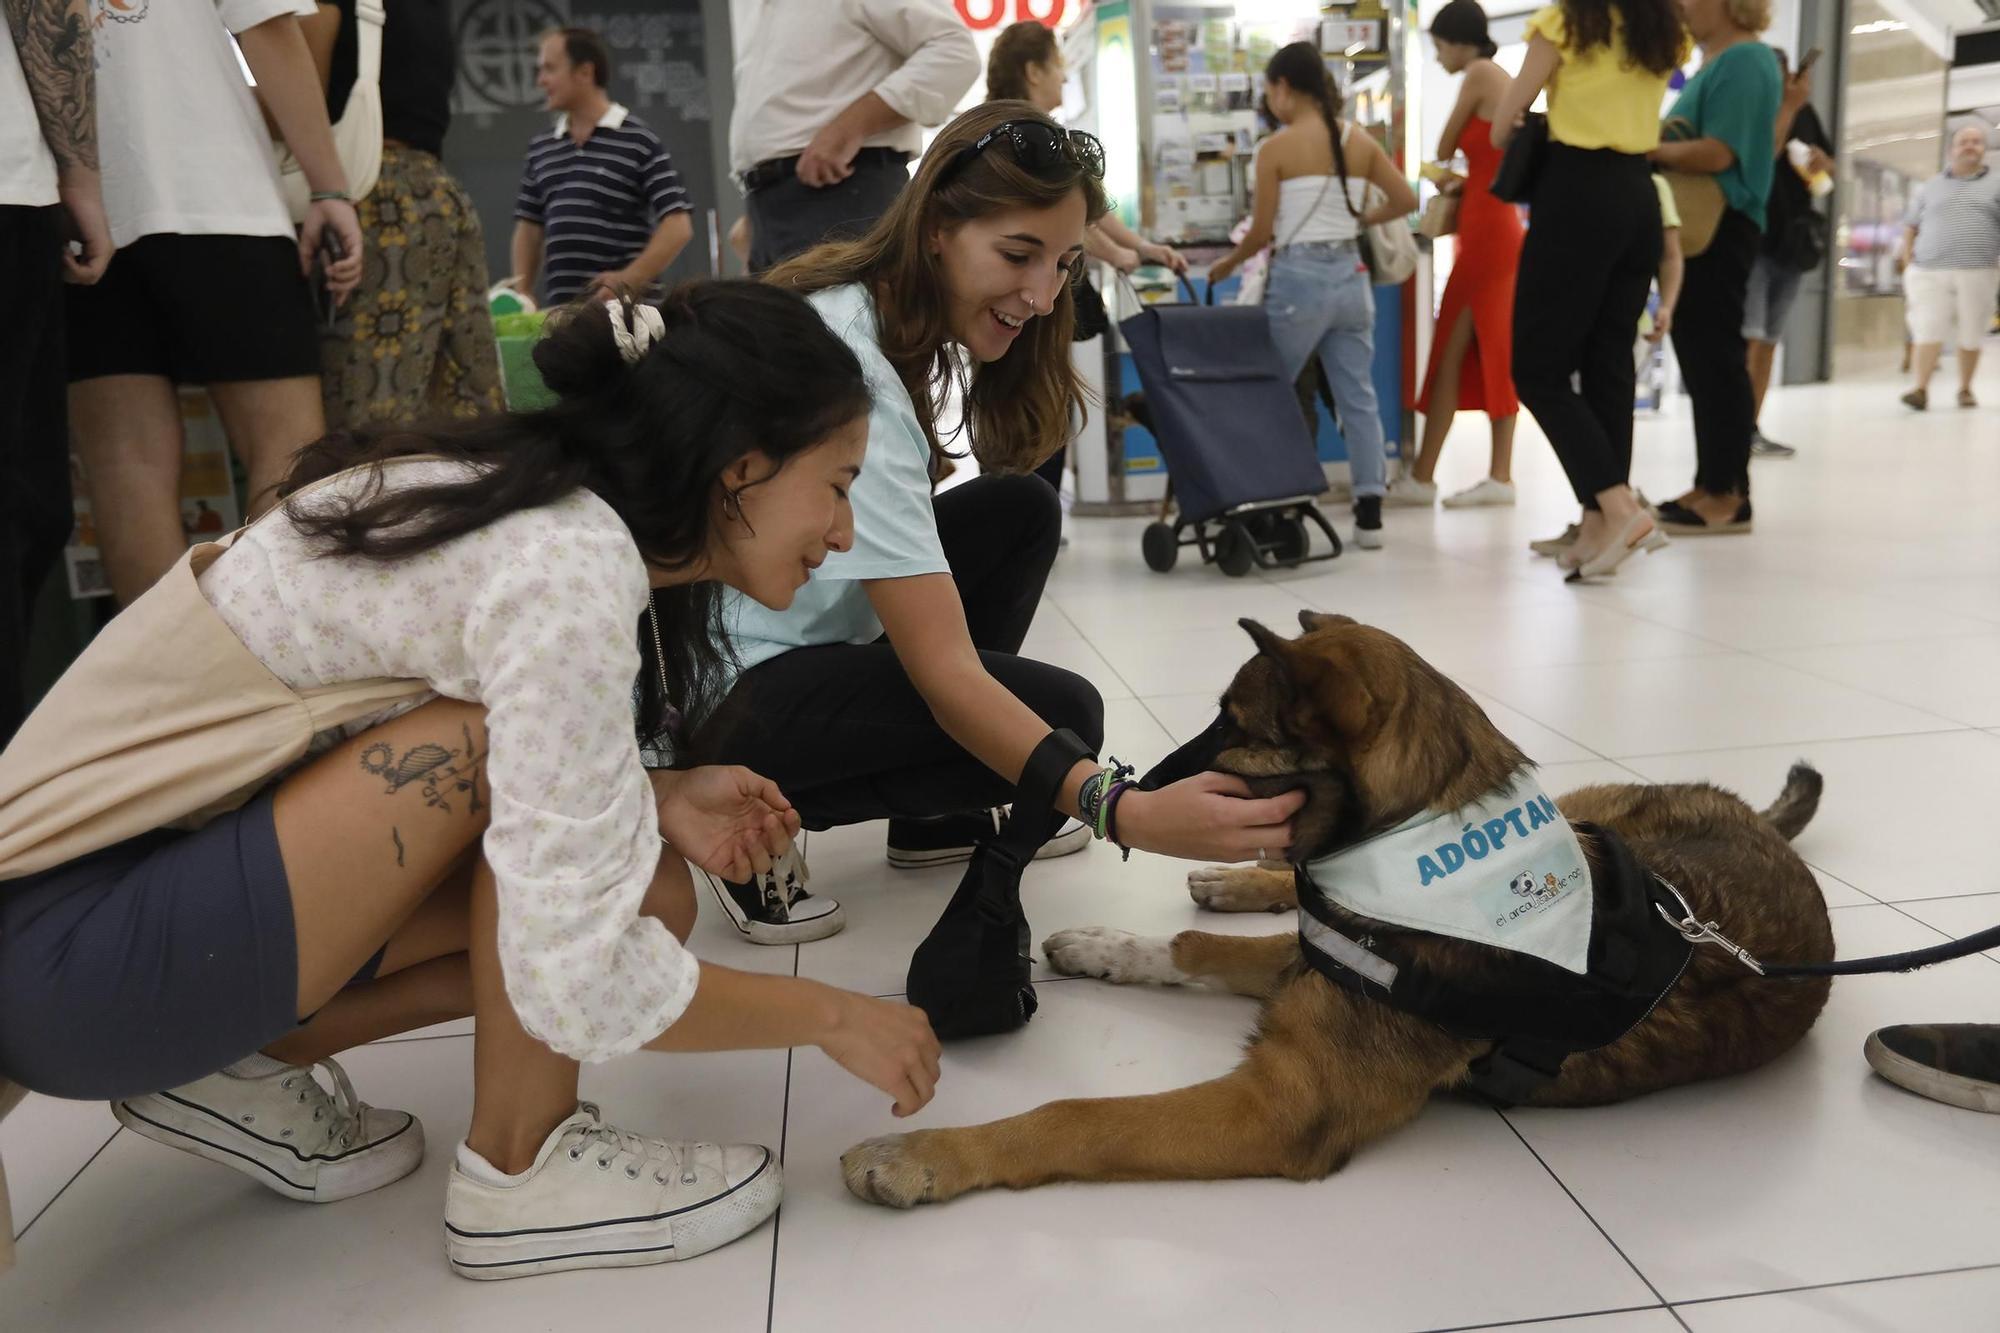 Las imágenes del desfile de perros en adopción en el Centro Comercial La Sierra